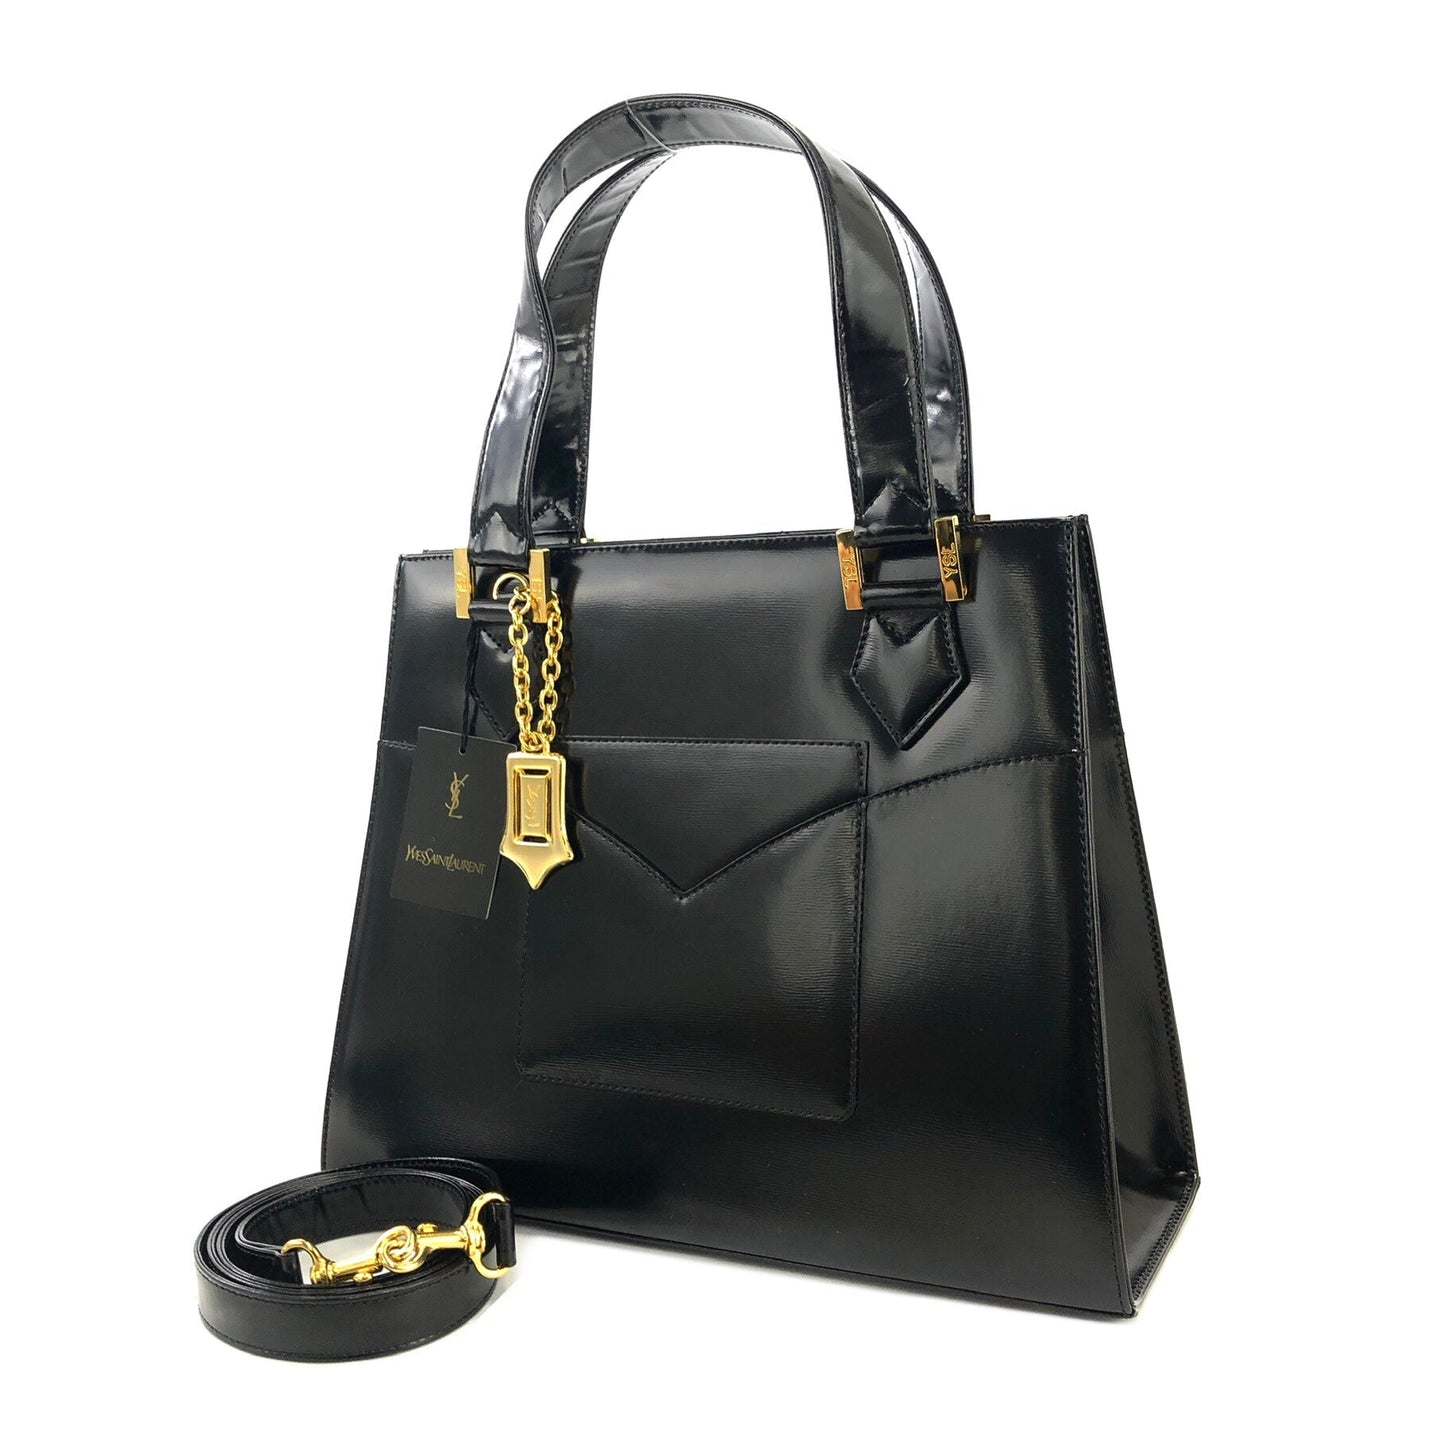 Yves Saint Laurent YSL logo charm Handbag Shoulder bag Black Vintage Old fgbhs2